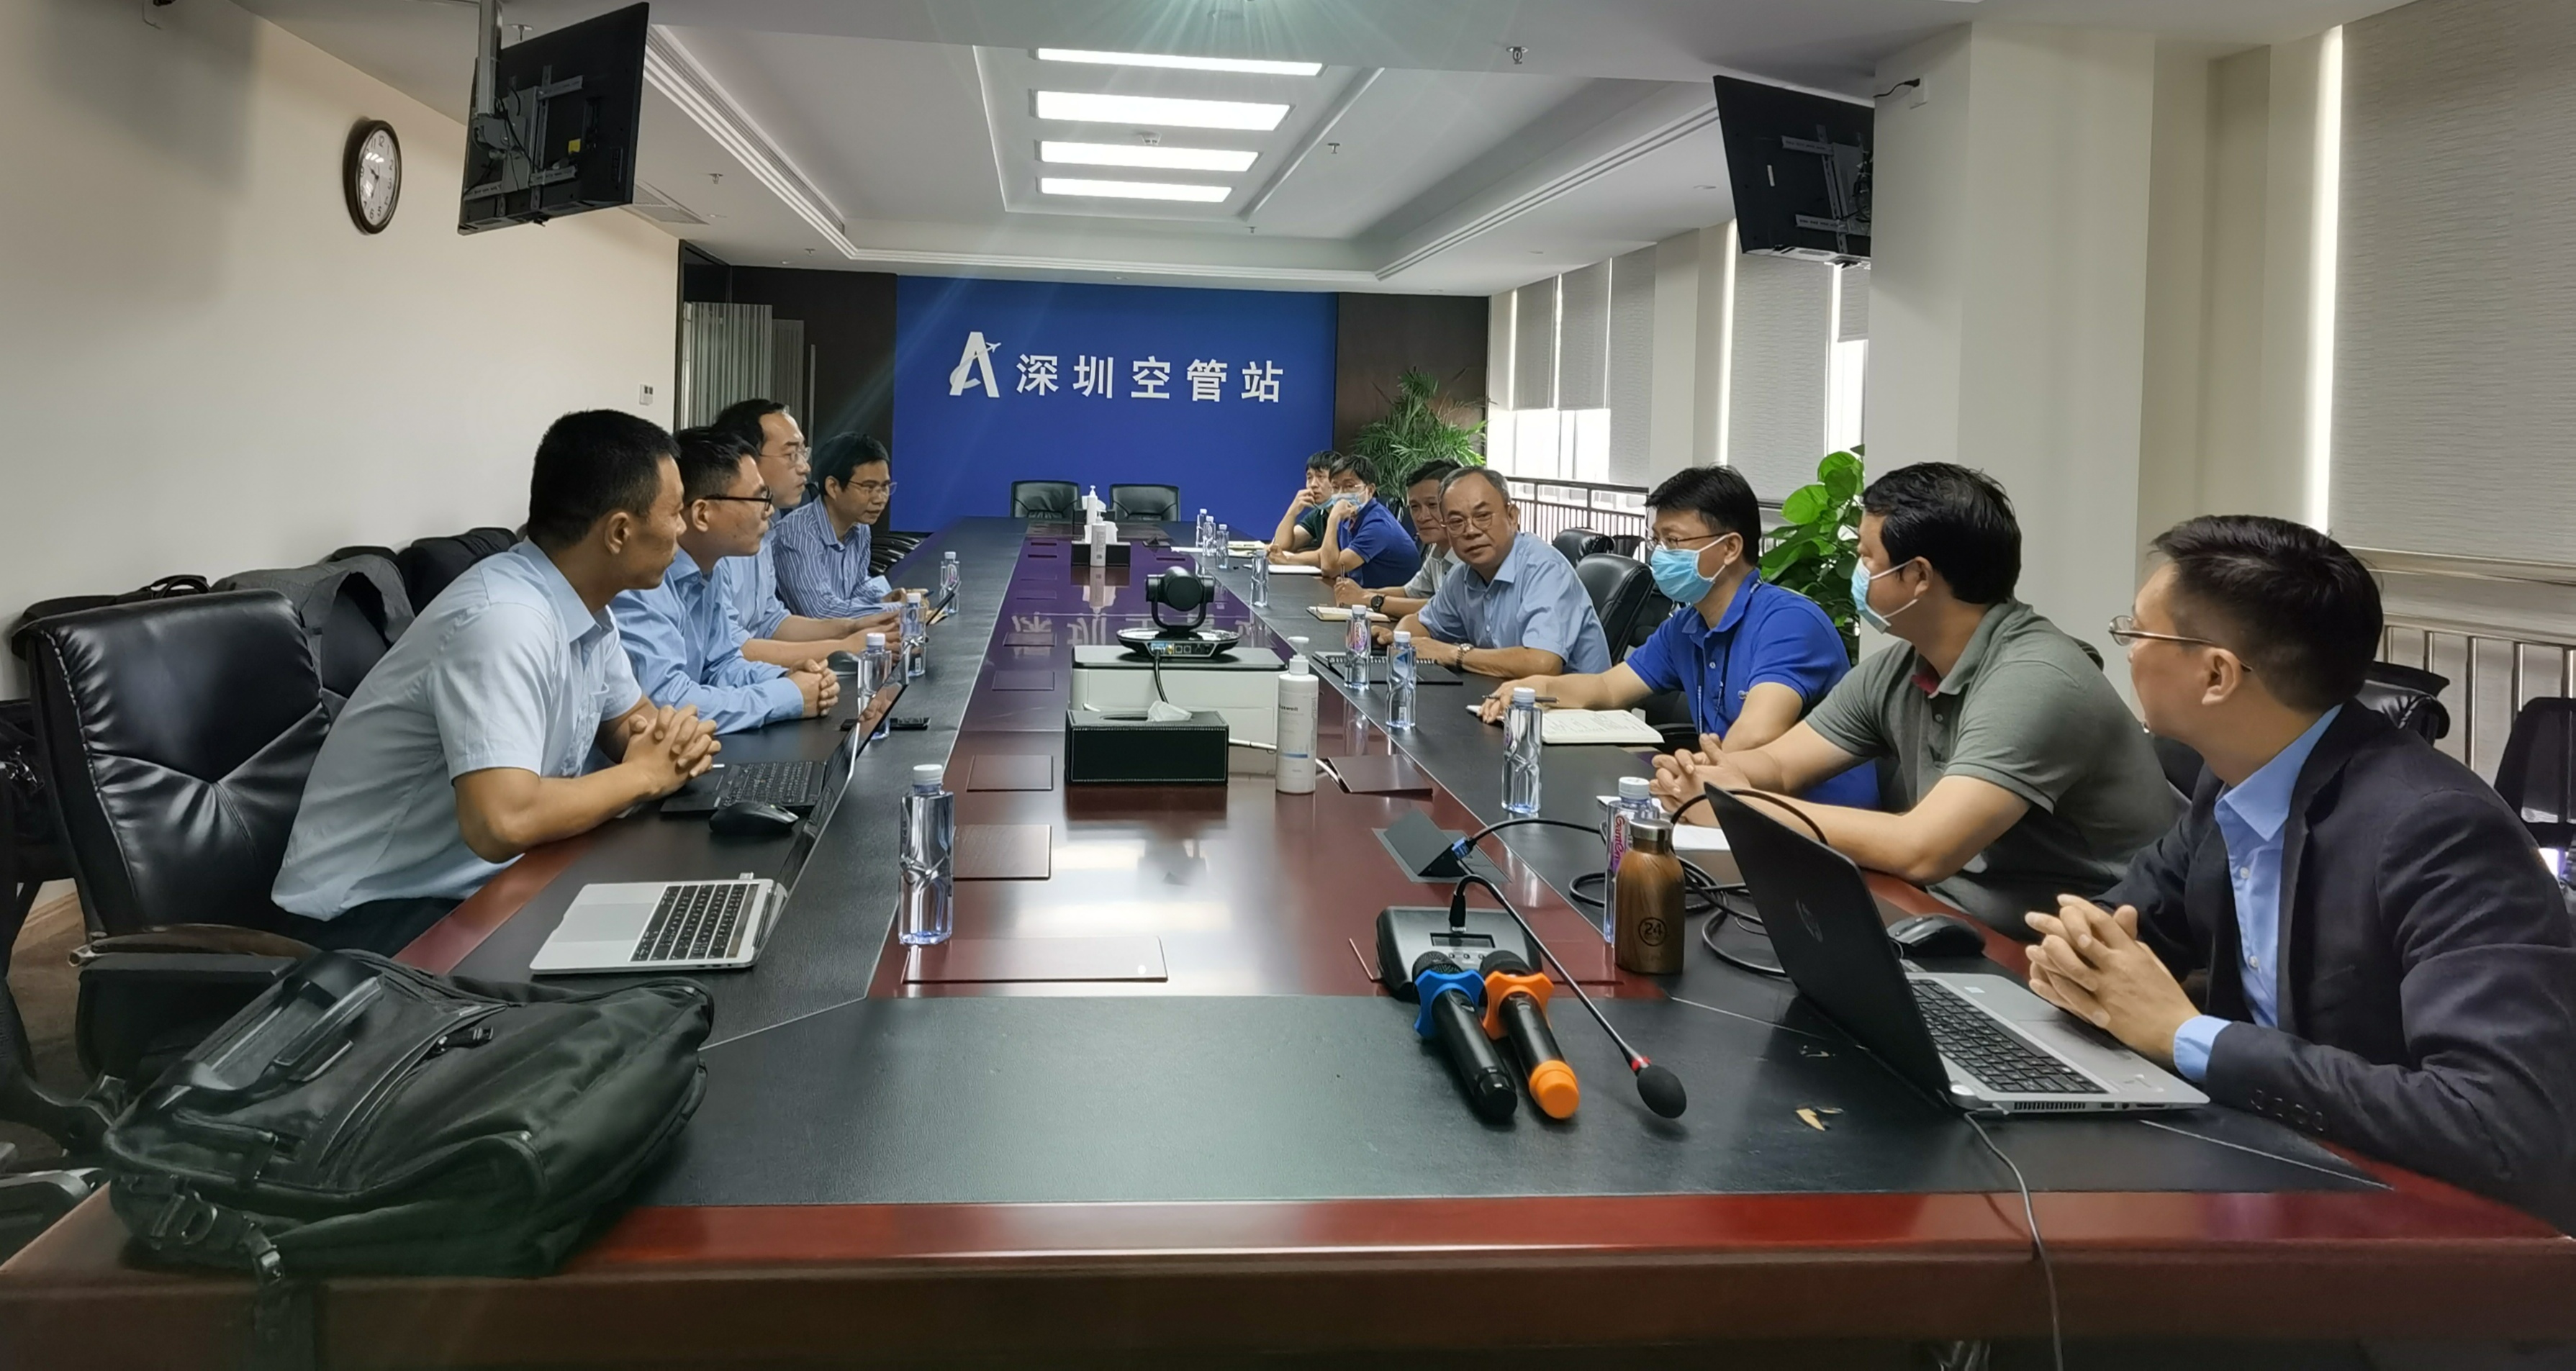 深圳空管站与华为技术有限公司探讨航空气象业务合作